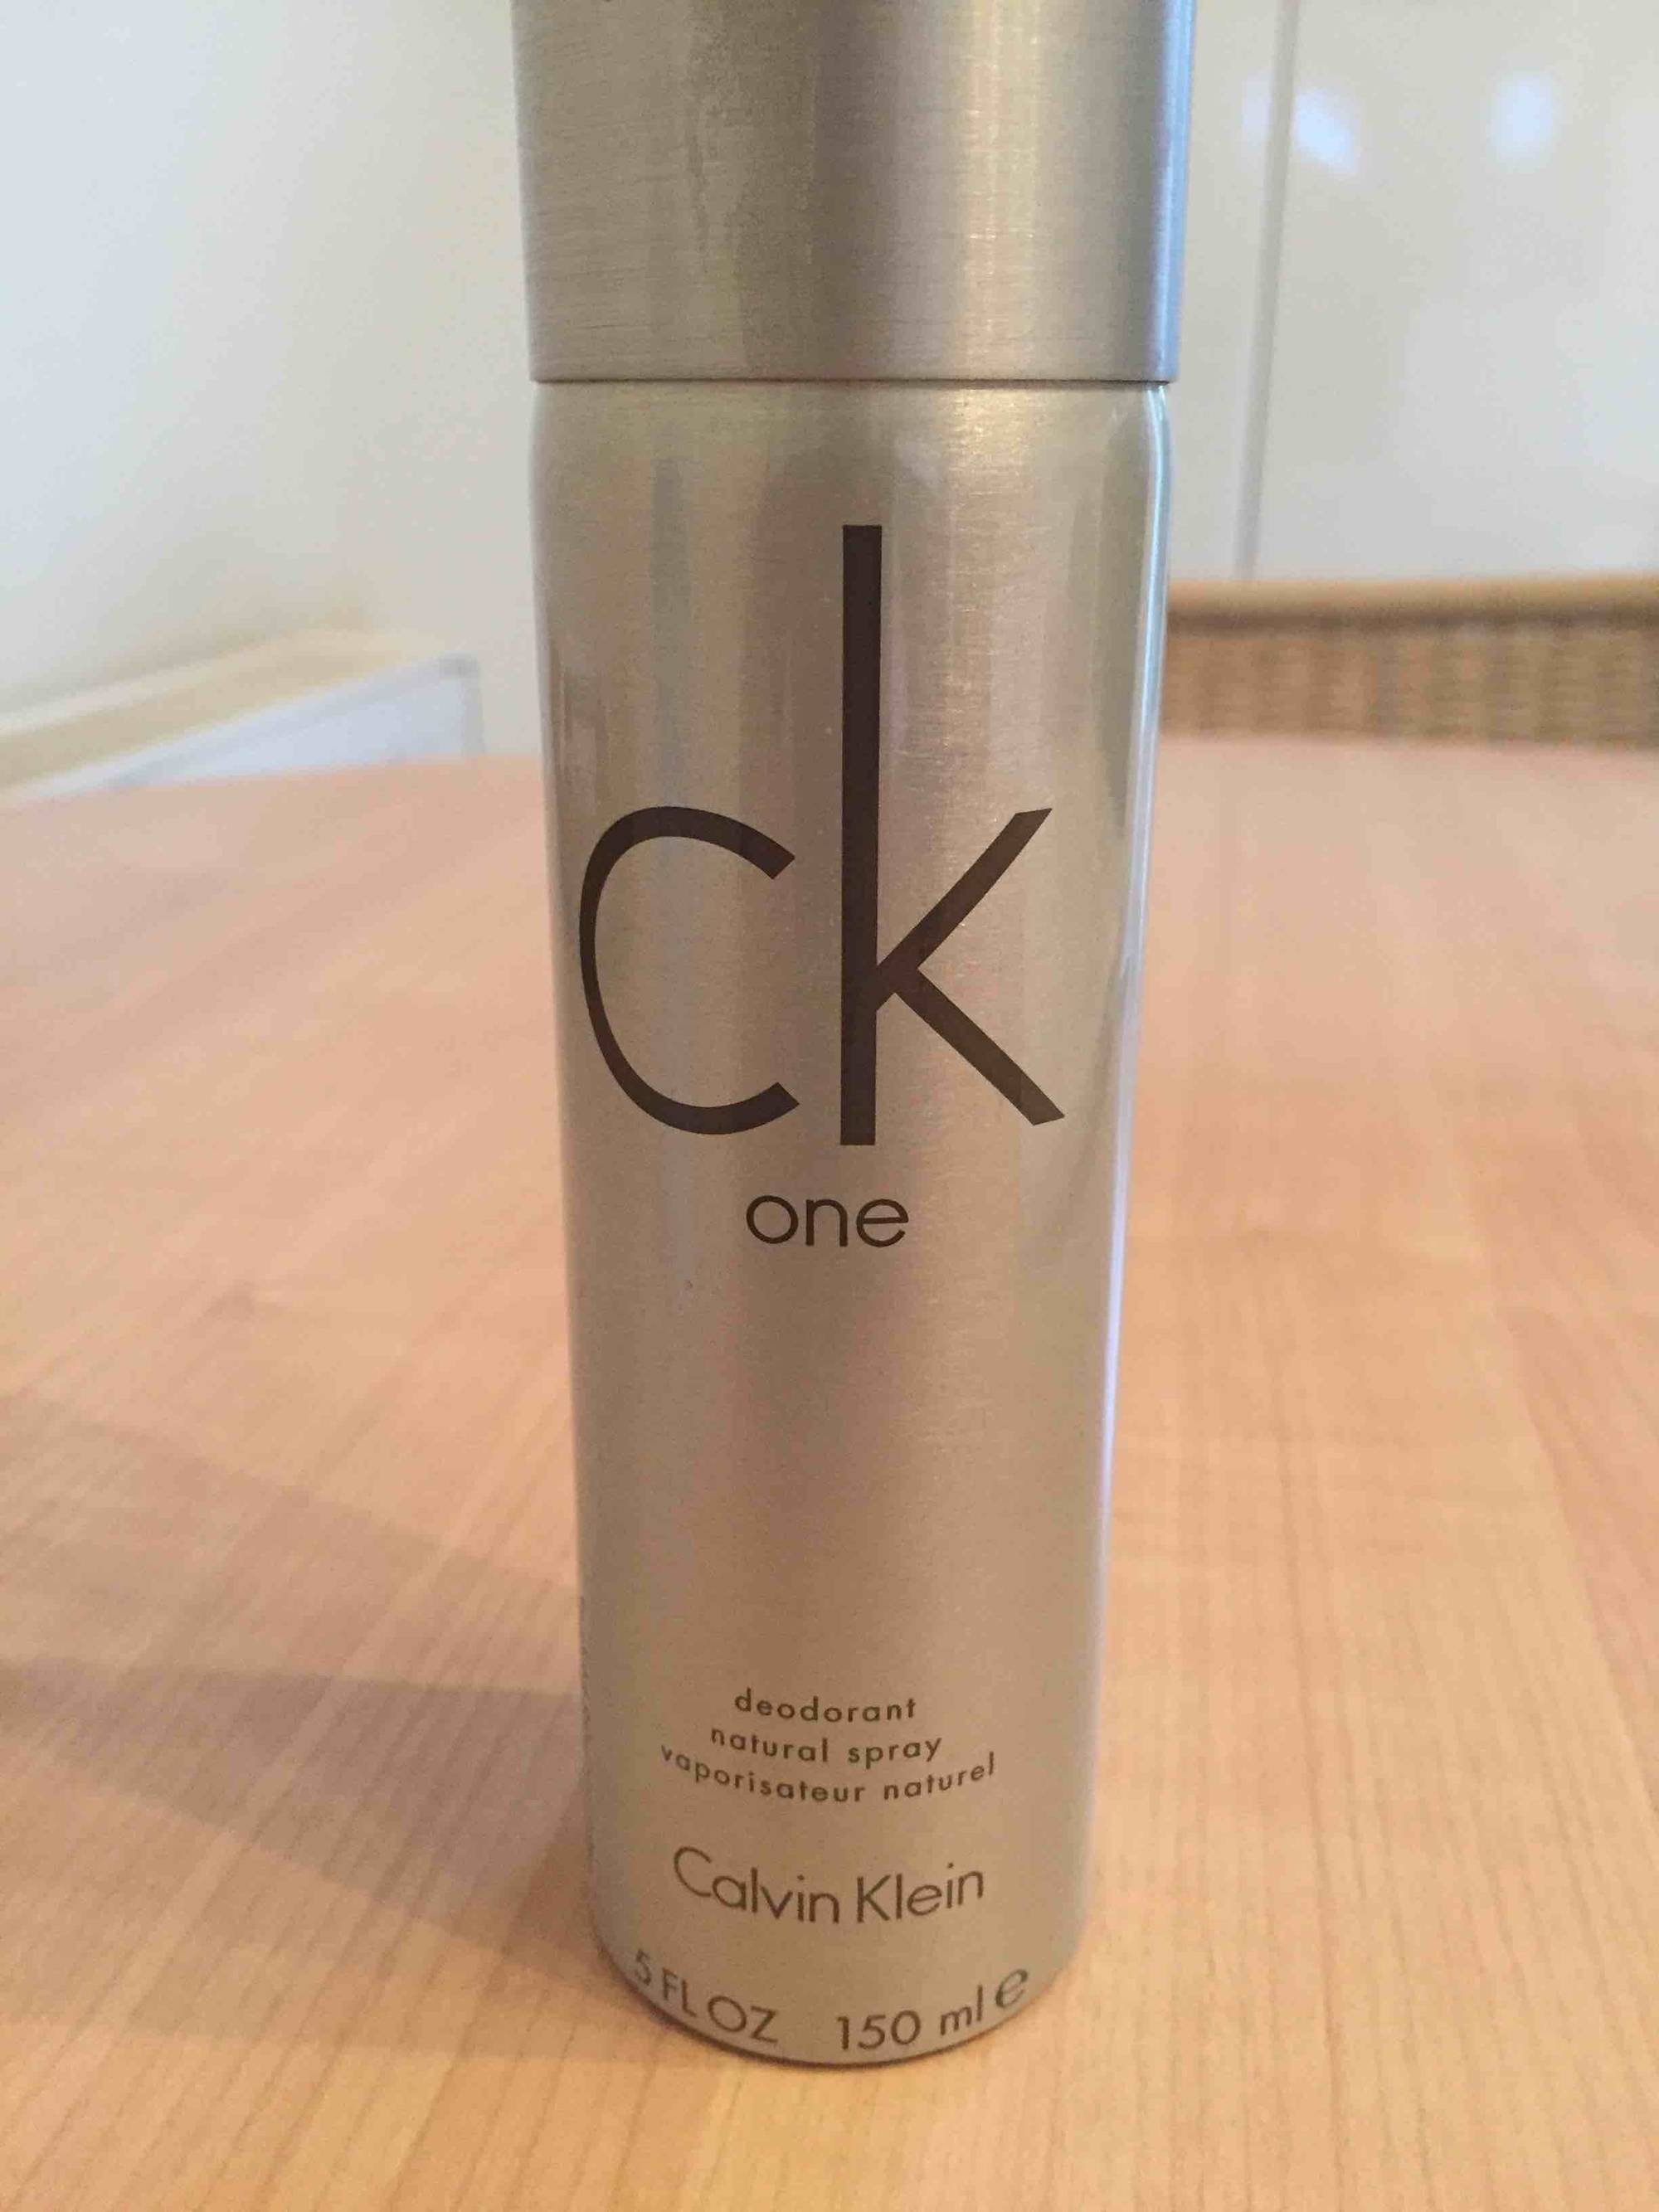 CALVIN KLEIN - CK One - Deodorant natural spray